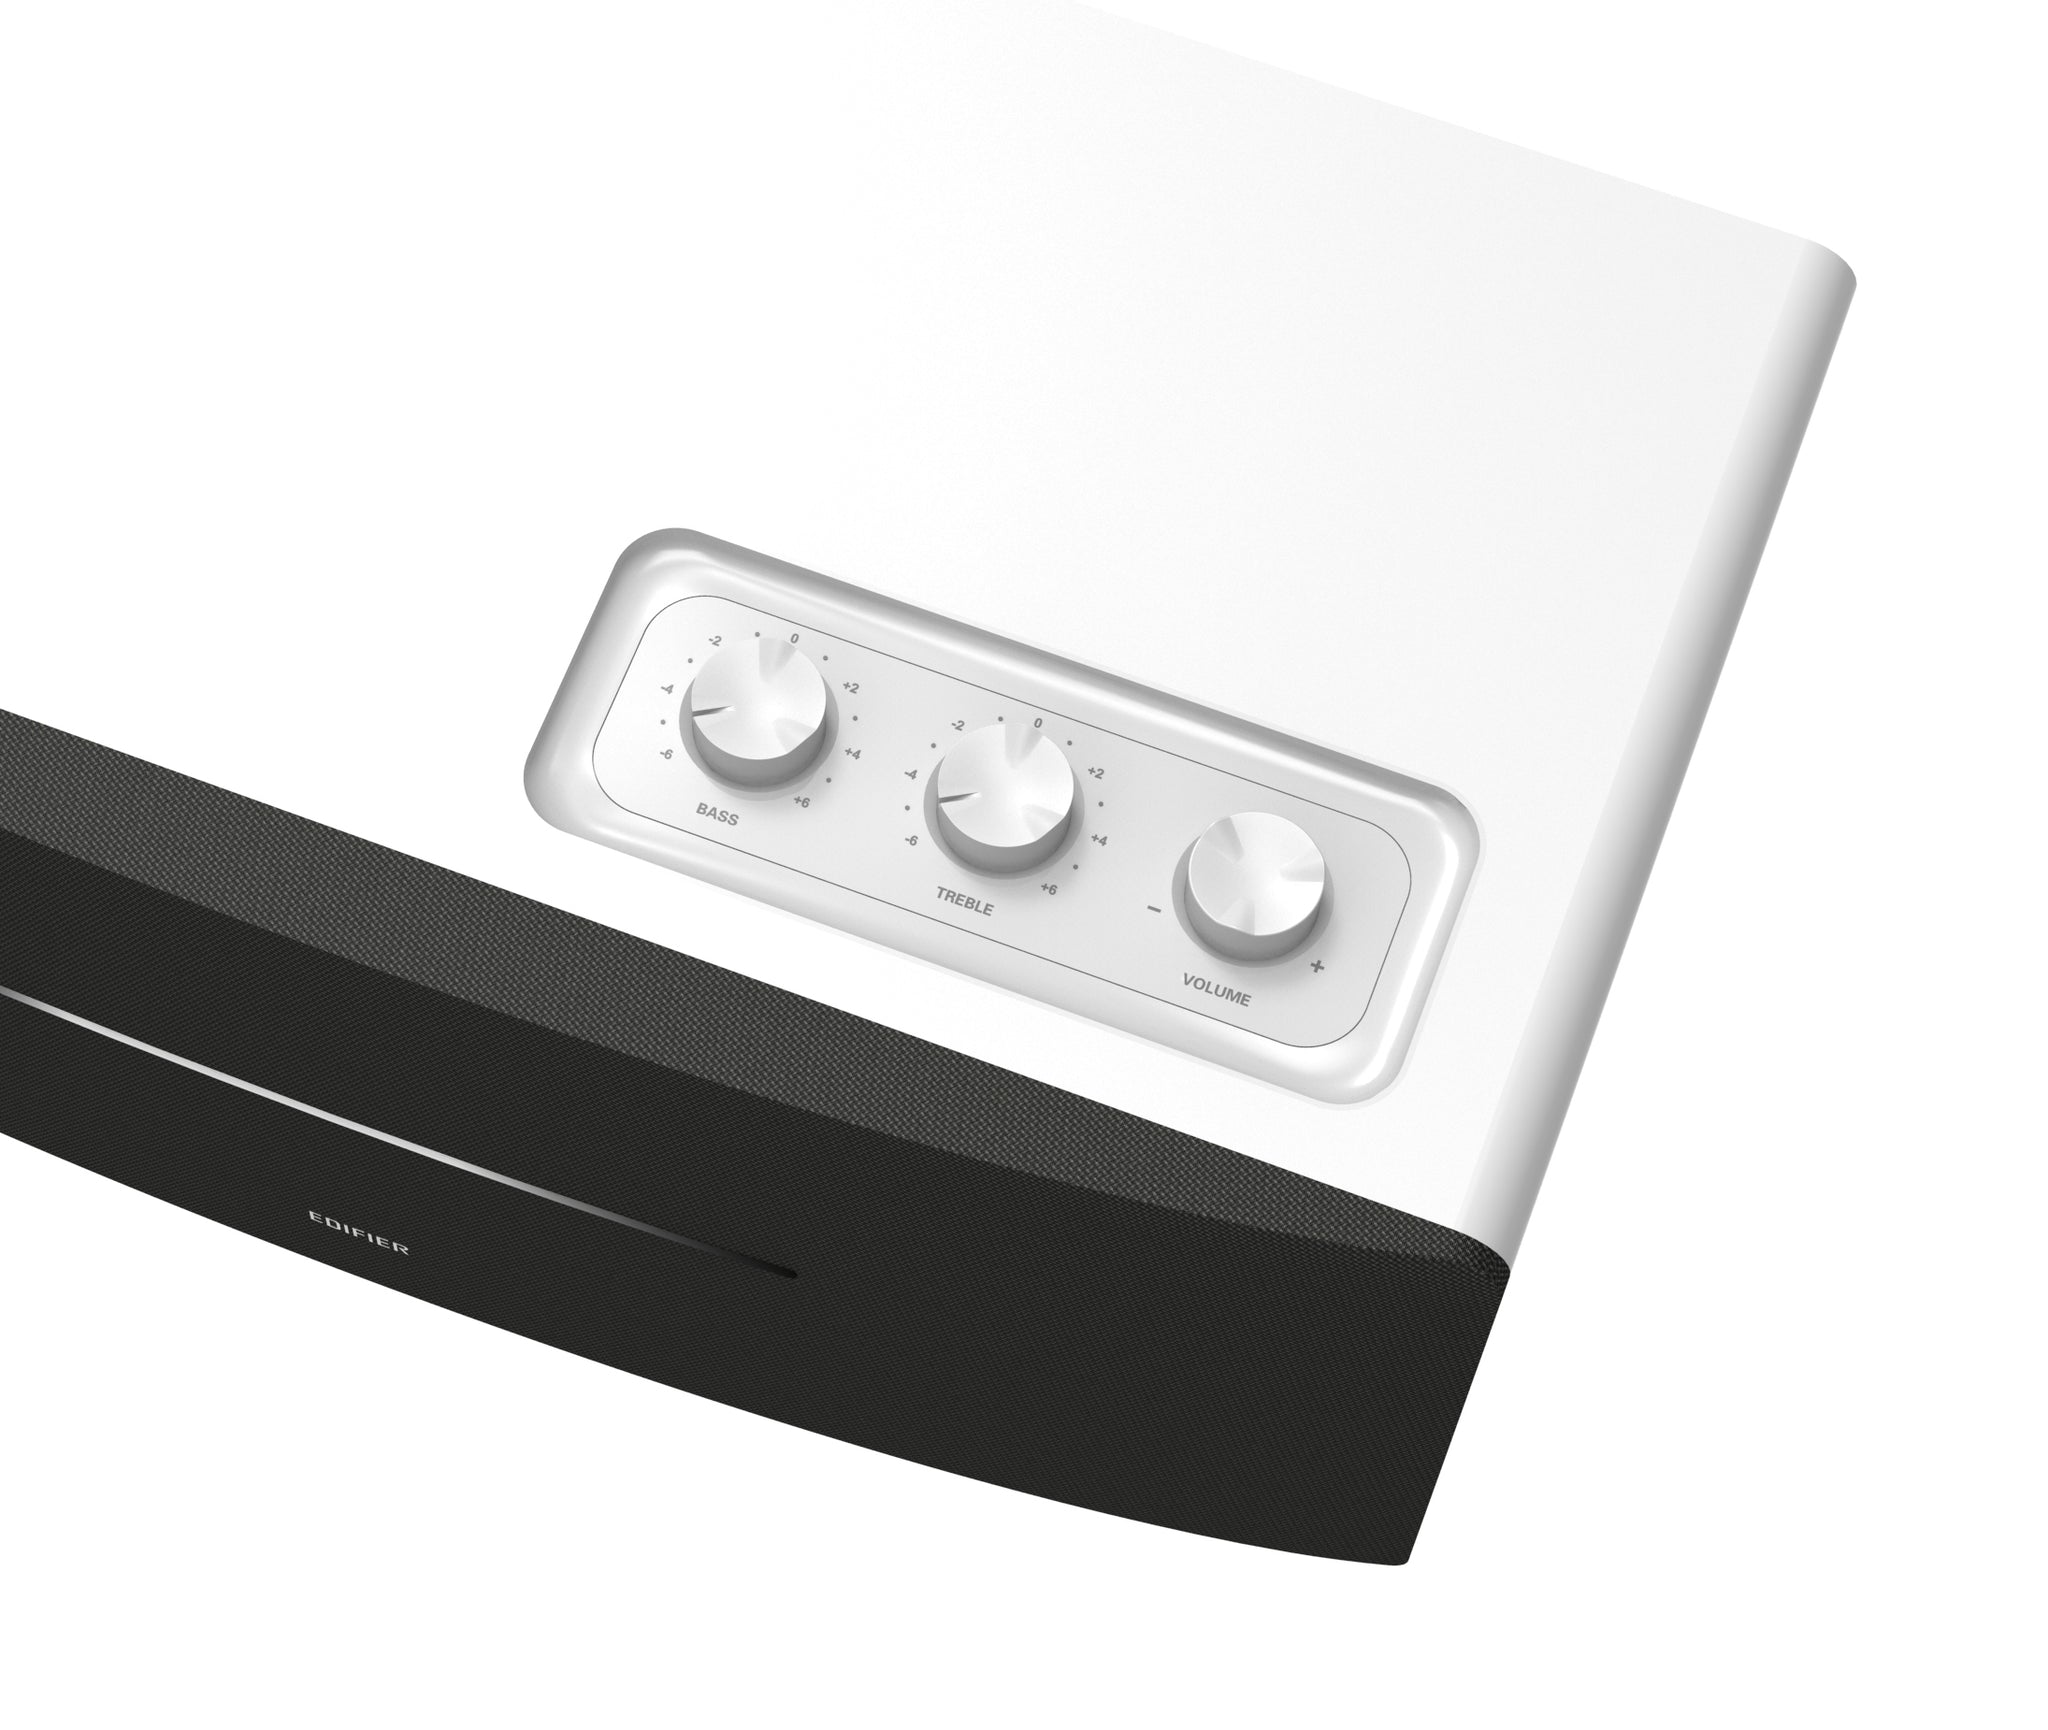 Edifier D12 2.1 Stereo Bluetooth Speaker - White